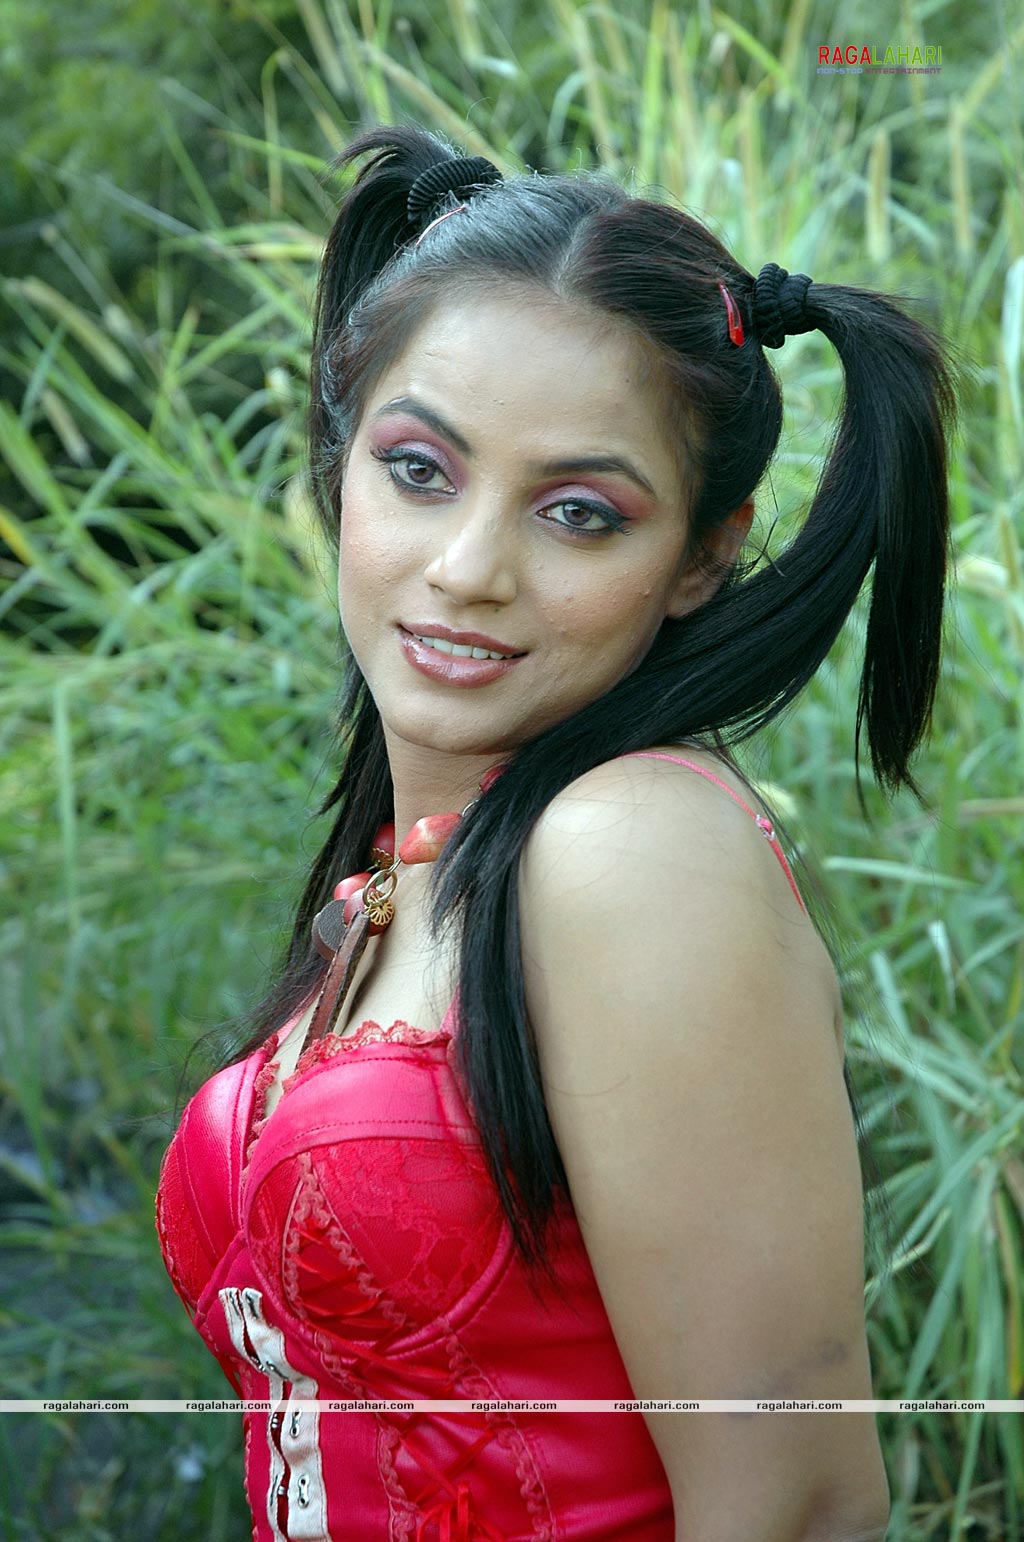 Neetu Chandra